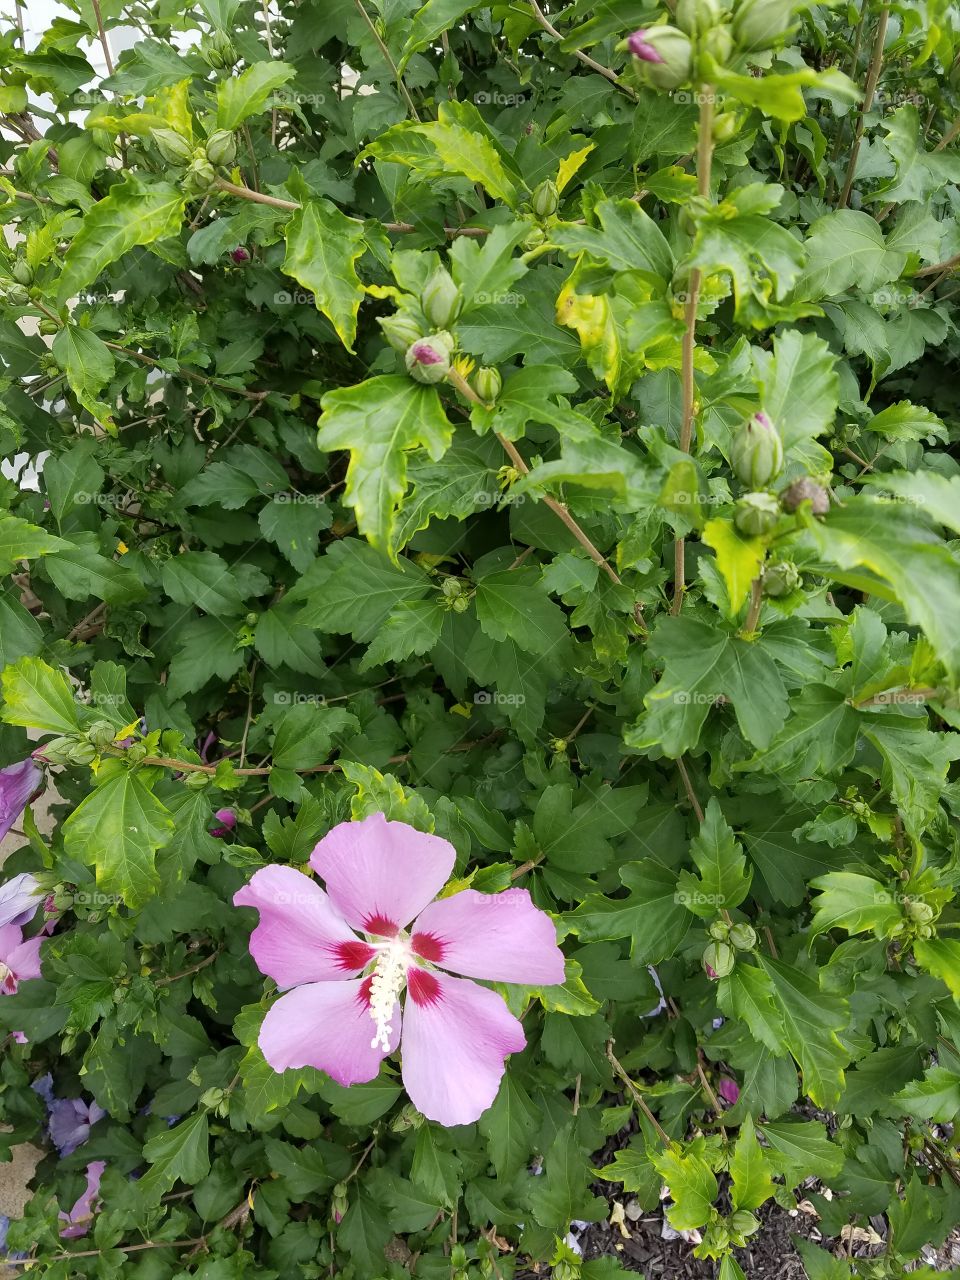 flower on my garden